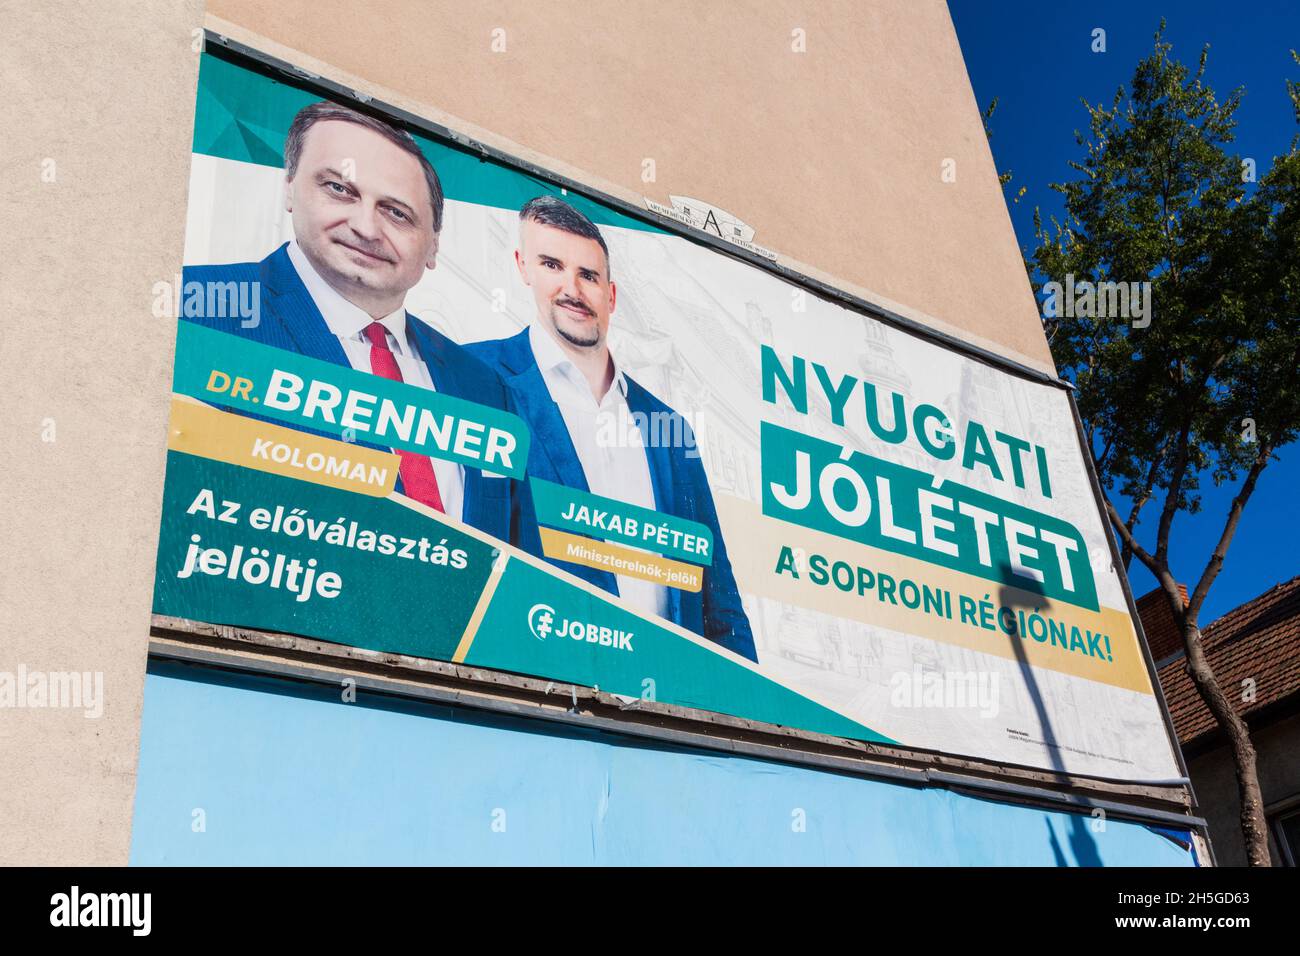 Affissioni della preelezione ungherese con i candidati del partito Jobbik Koloman Brenner e Peter Jakab, Sopron, Ungheria Foto Stock